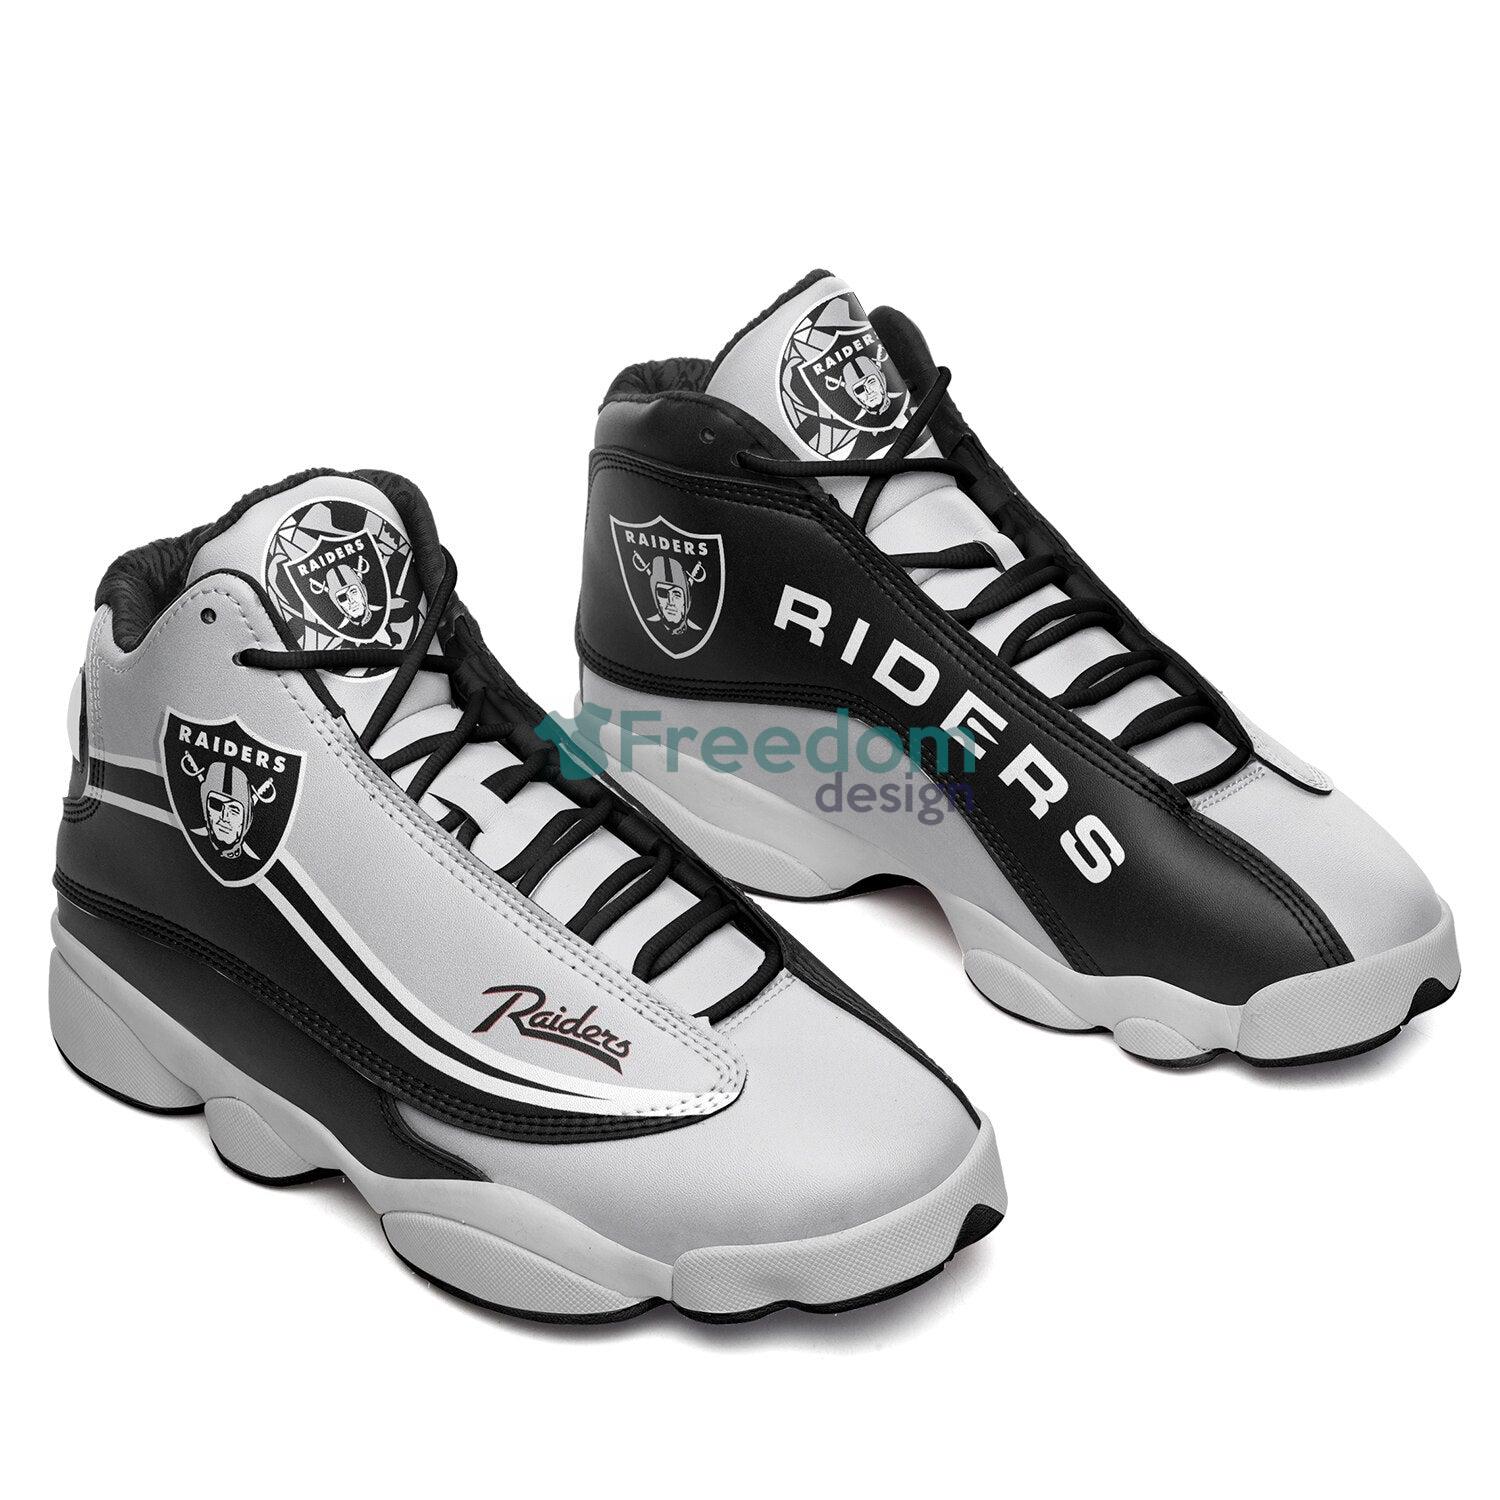 Las Vegas Raiders Custom Name Air Jordan 13 Shoes For Fans